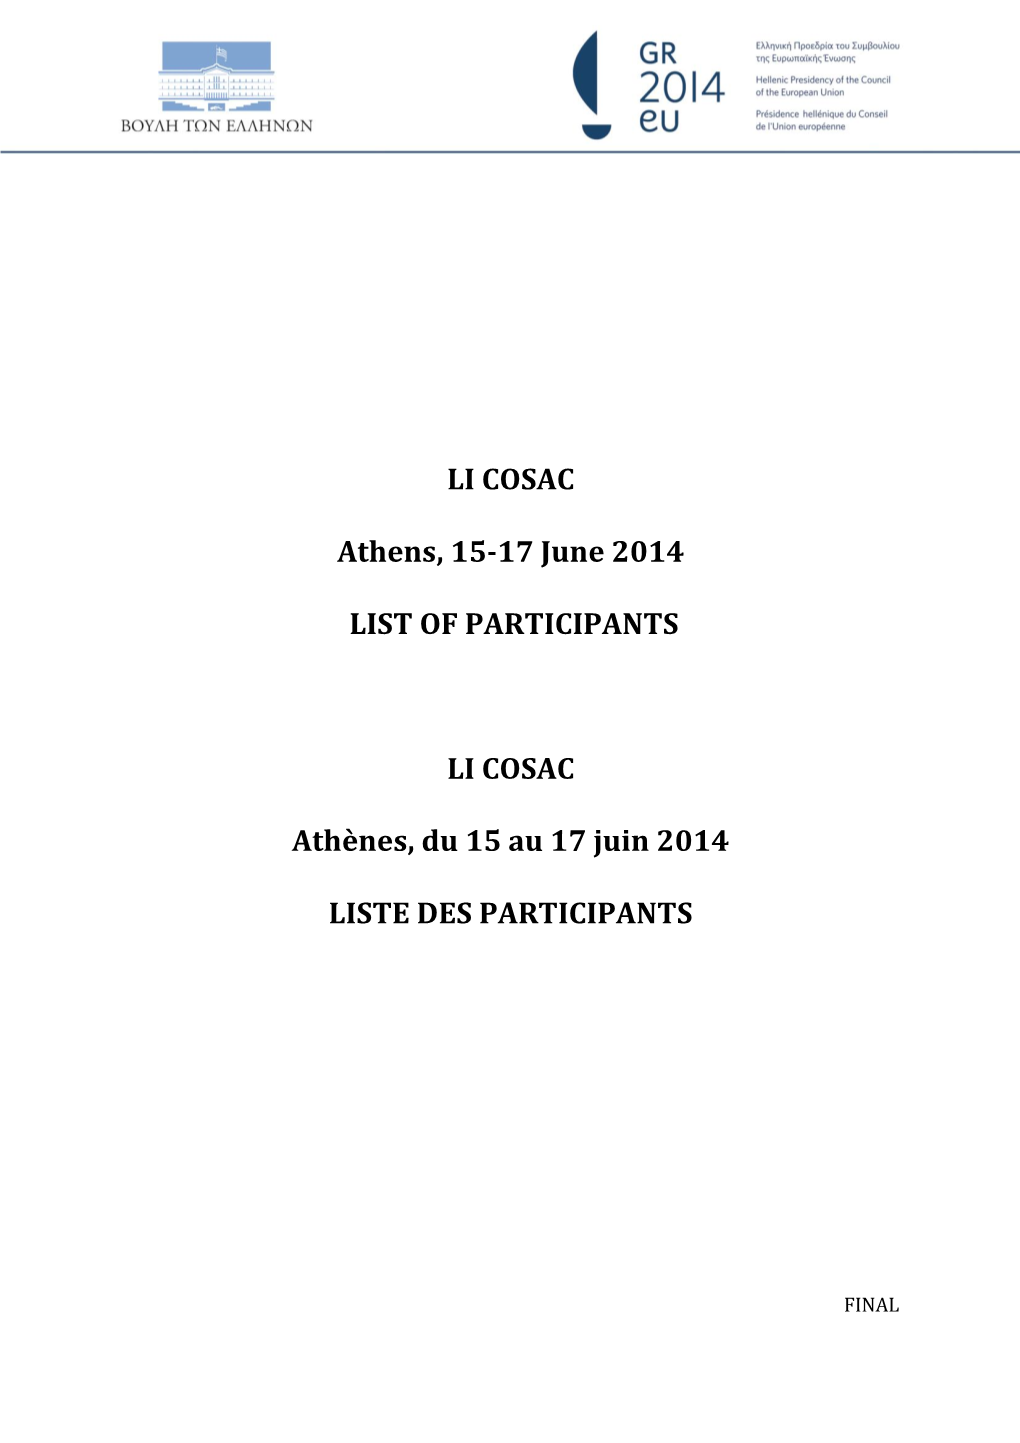 LI COSAC Athens, 15-17 June 2014 LIST of PARTICIPANTS LI